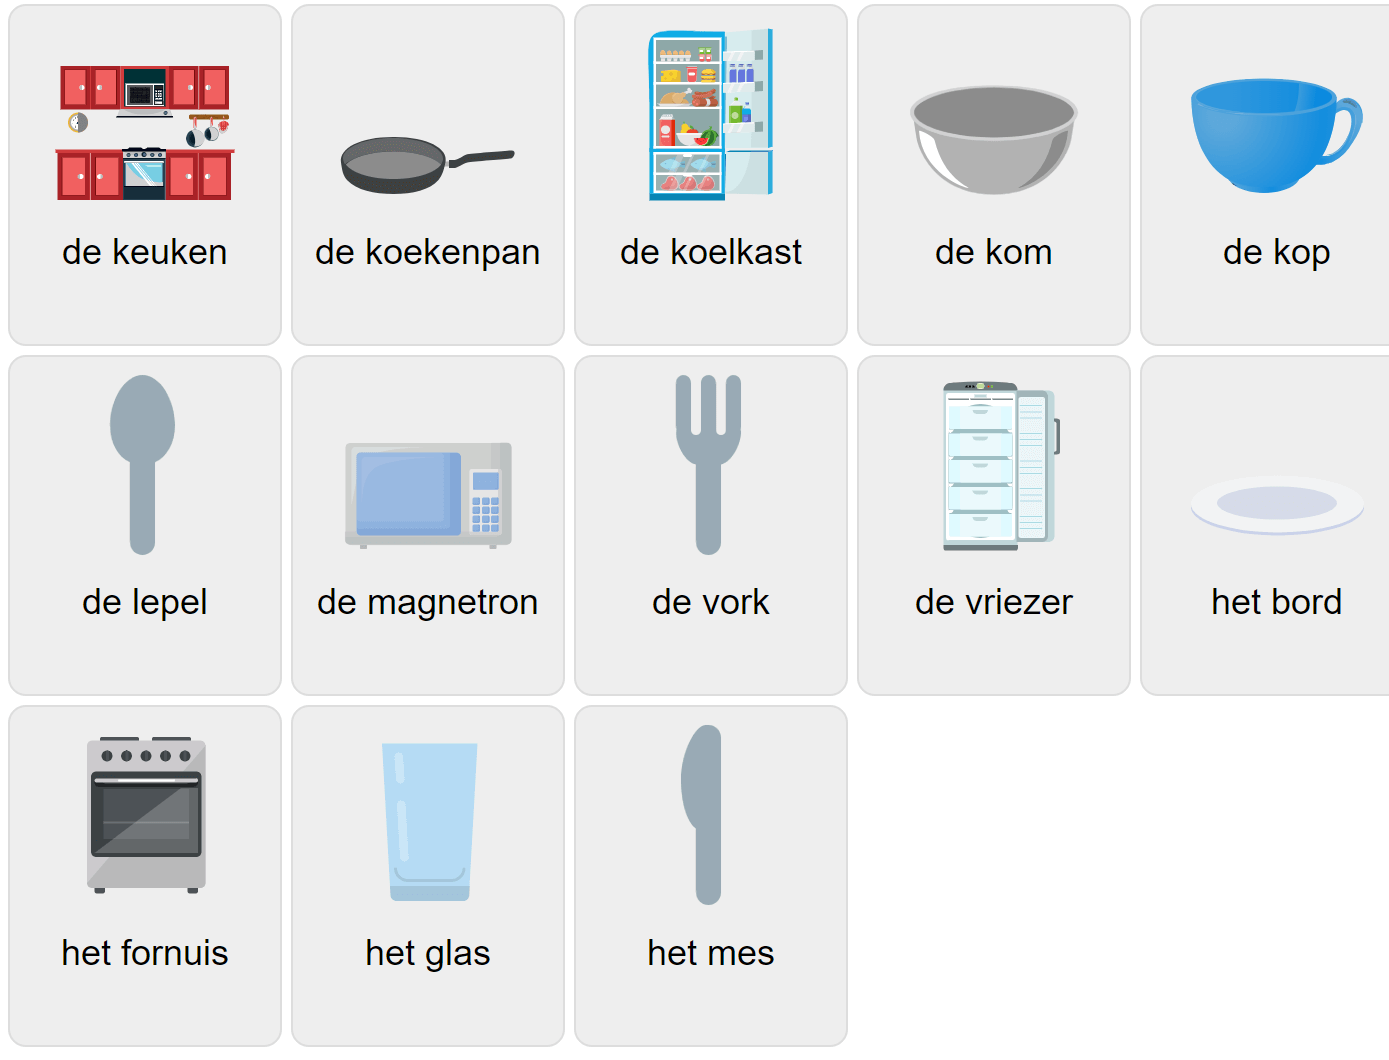 Köksvokabulär på nederländska